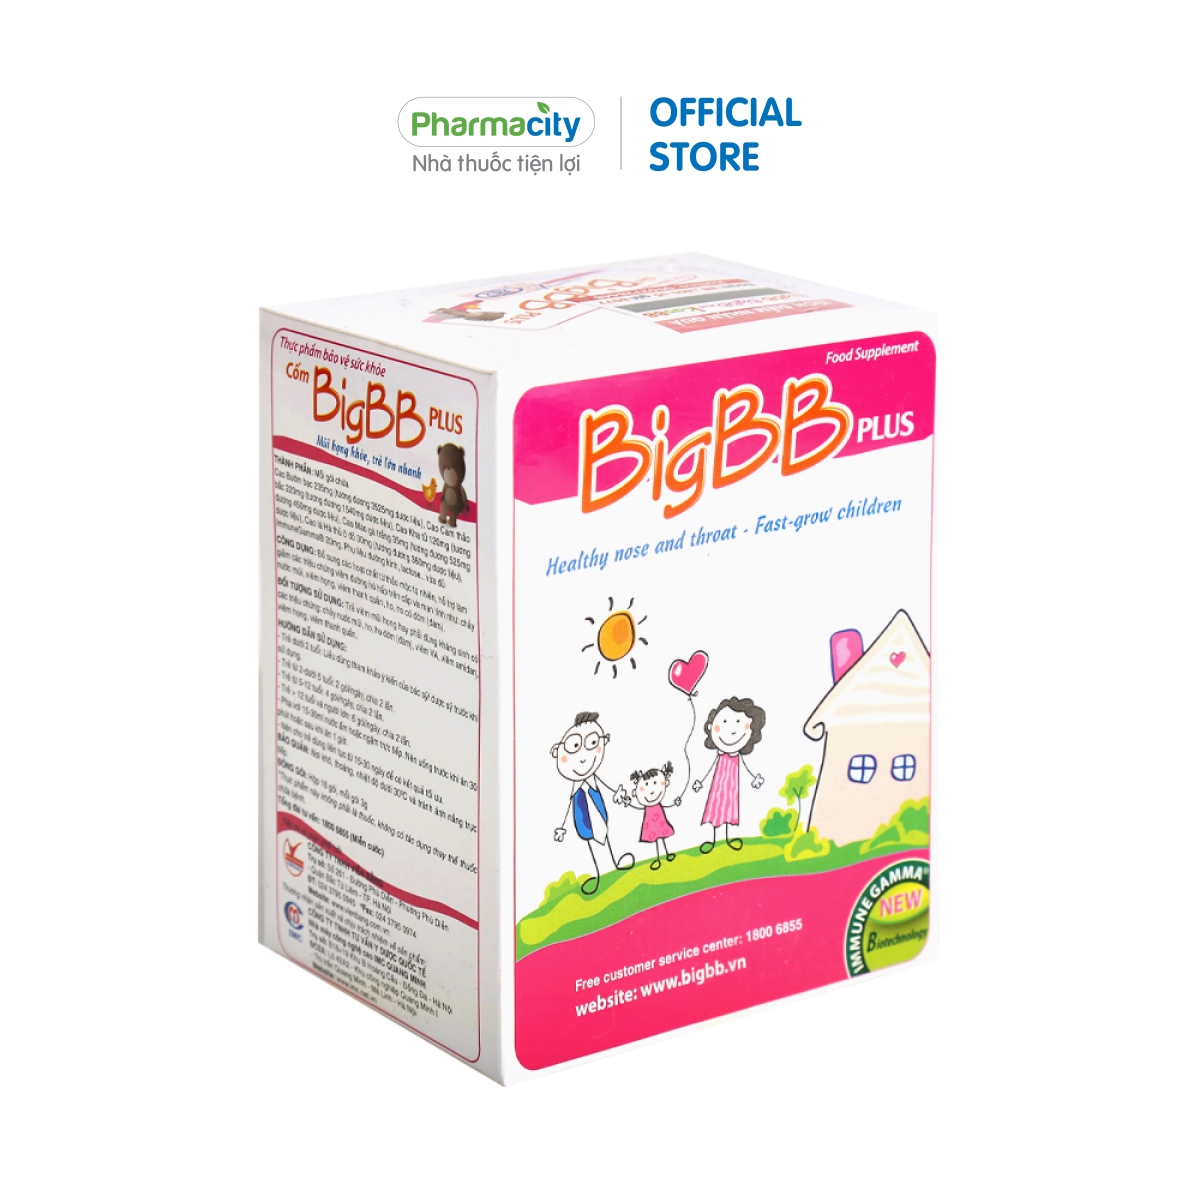 Cốm hỗ trợ đường hô hấp cho trẻ em Big BB Plus hỗ trợ giảm ho, đờm, đau rát họng, sổ mũi (Hộp 16 gói x 3g)